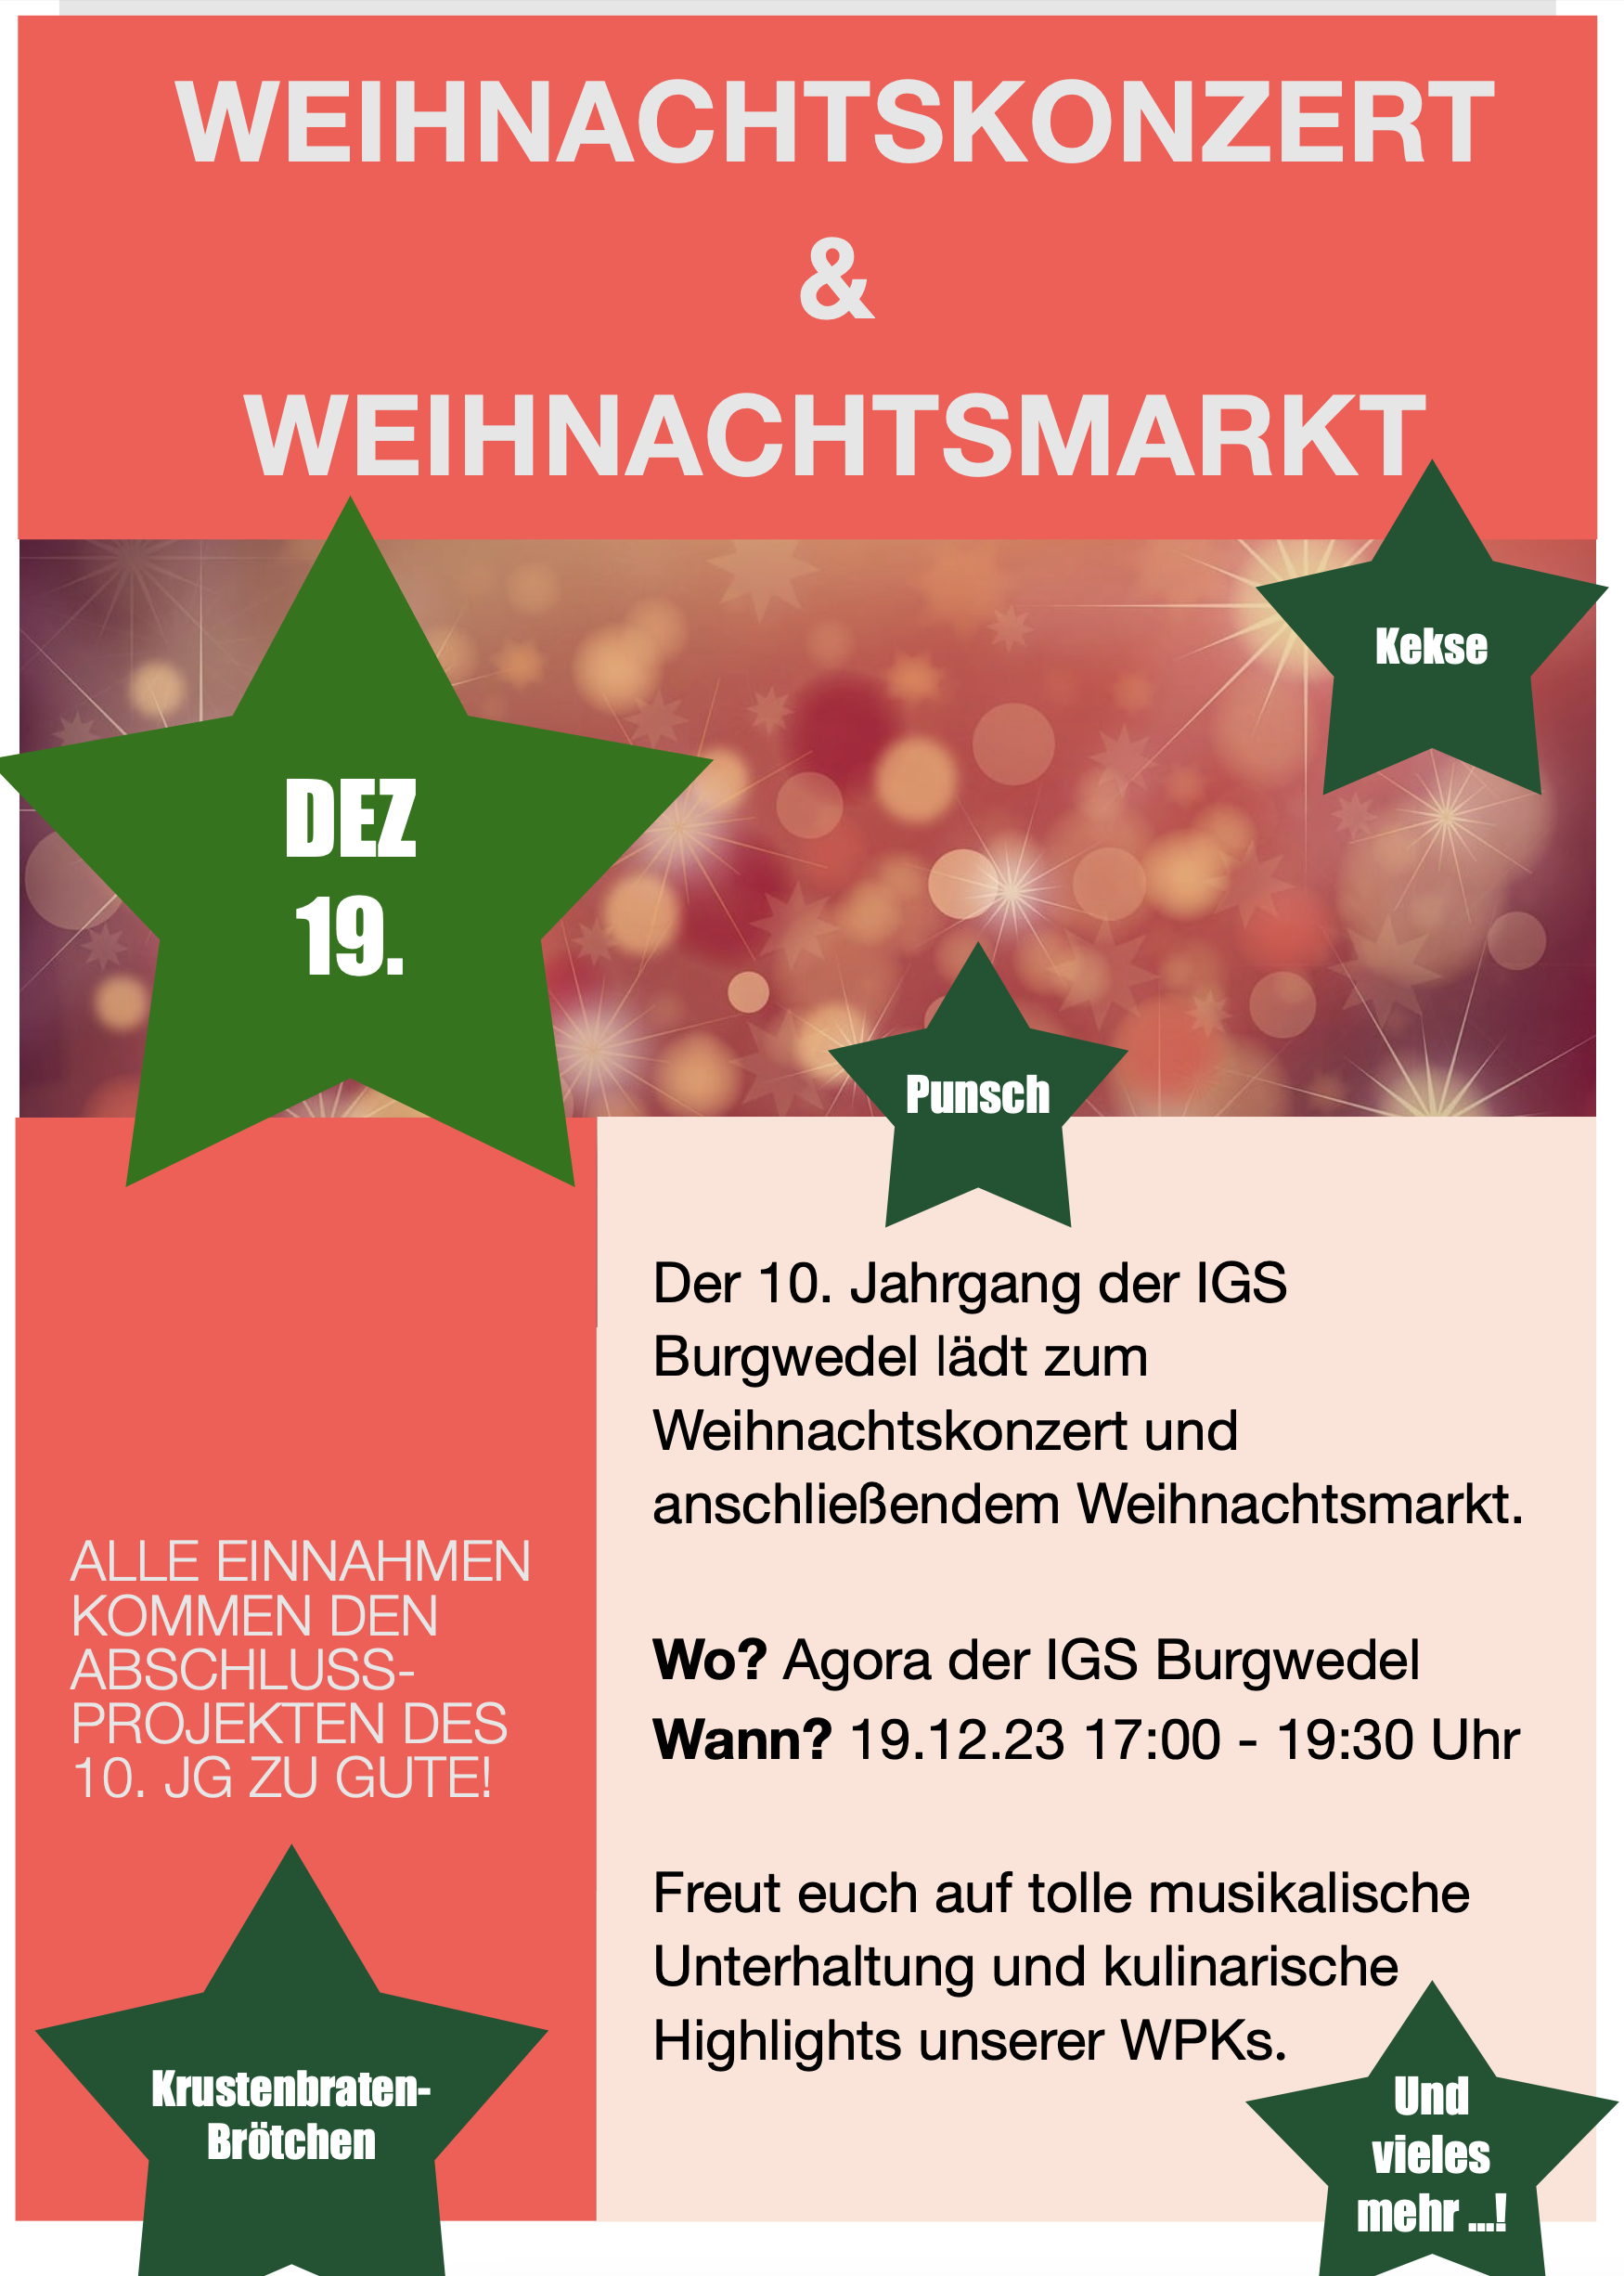 Weihnachtskonzert & Weihnachtsmarkt an der IGS Burgwedel am 19.12.2023